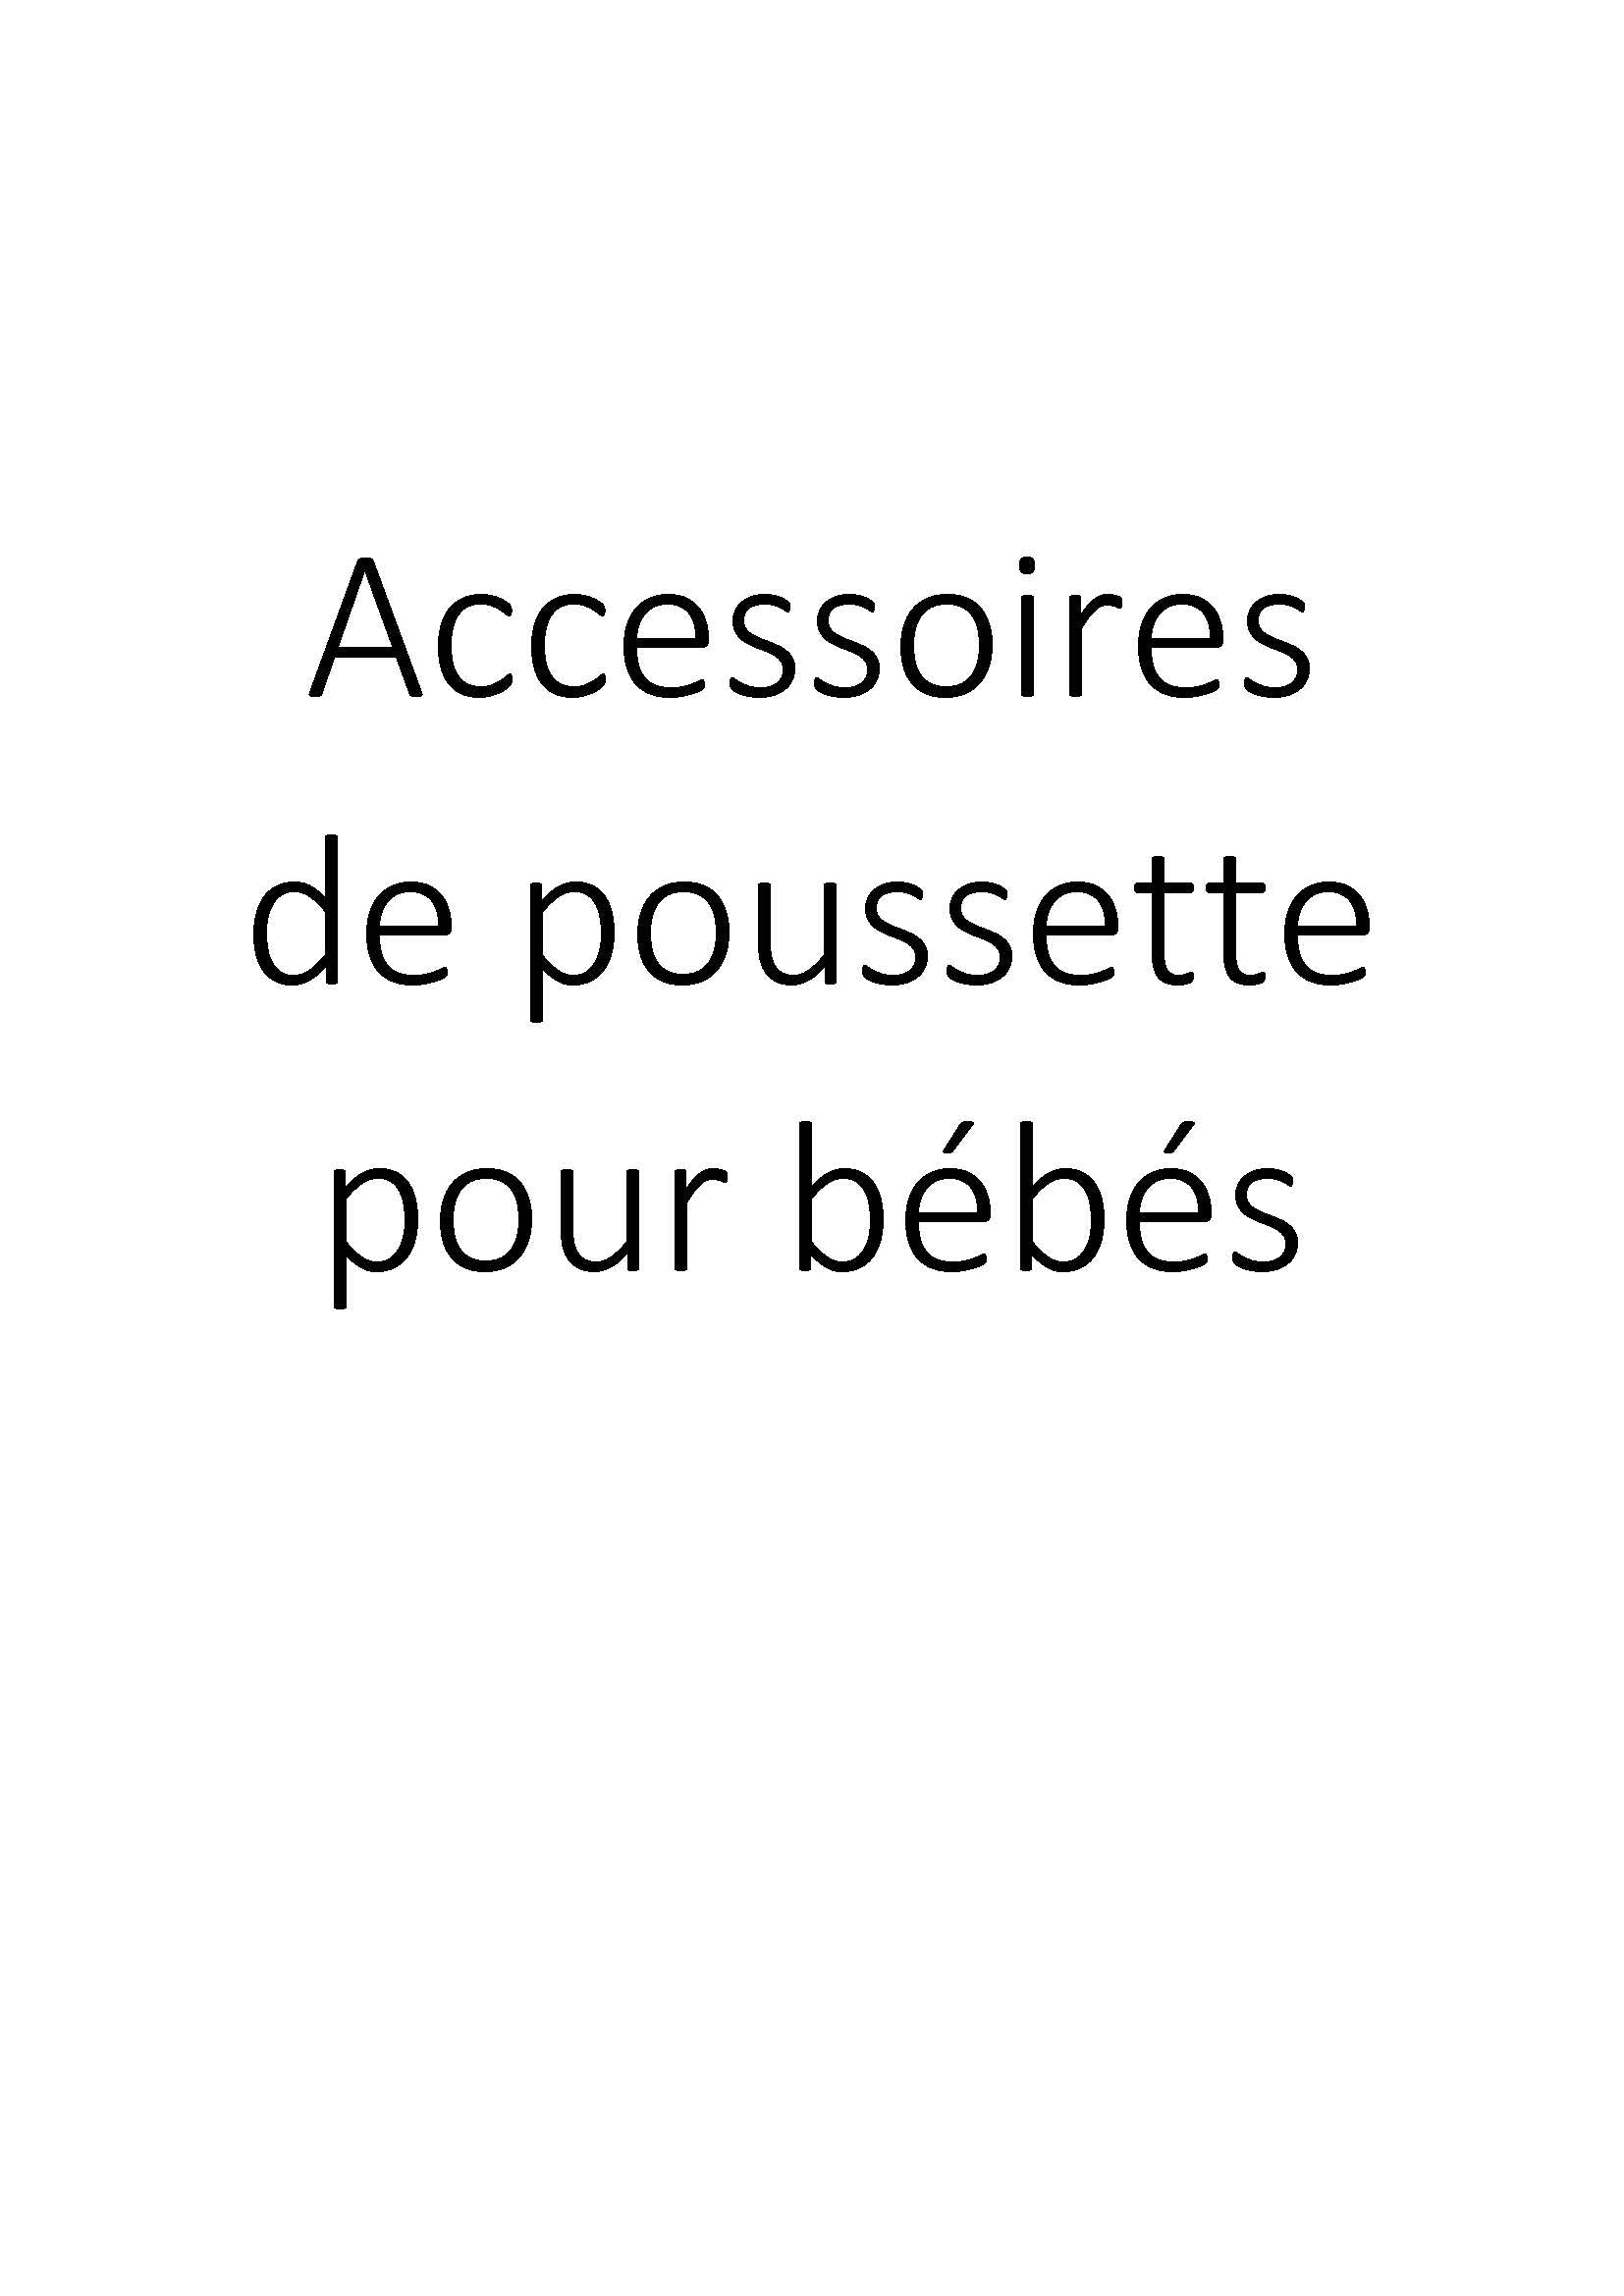 Accessoires de poussette pour bébés clicktofournisseur.com